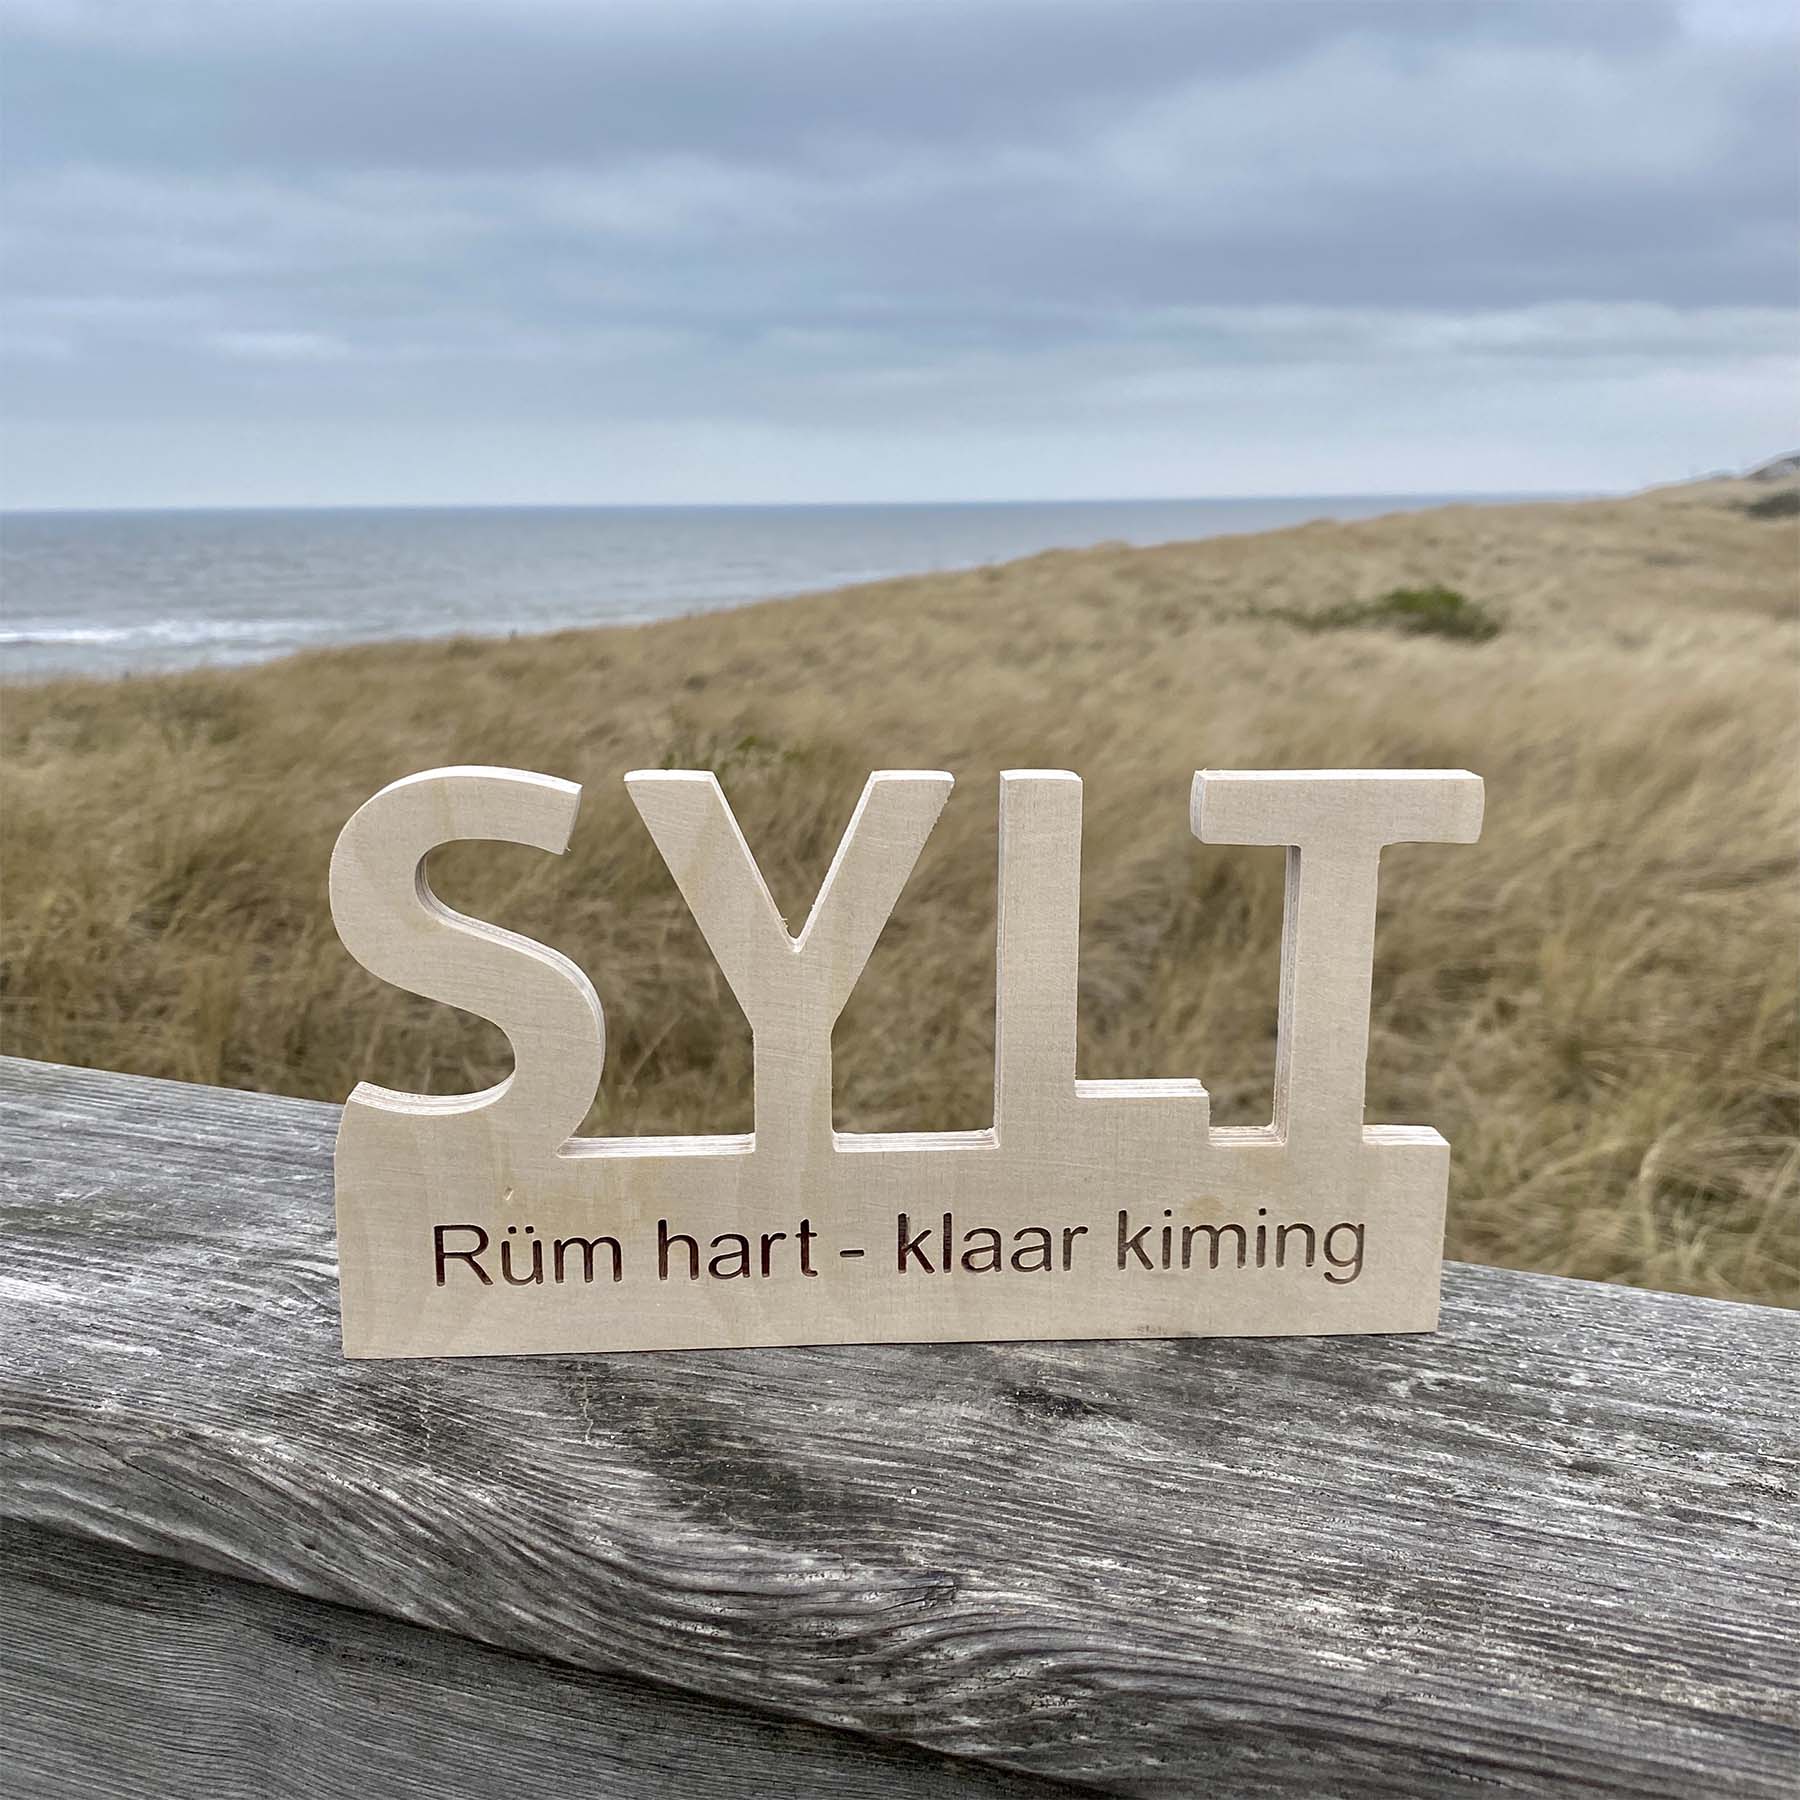 Holz Deko-Schild mit dem Begriff Sylt Rüm hart klar kiming steht am Strandausfgang mit Blick in die Dünen und aufs Meer.